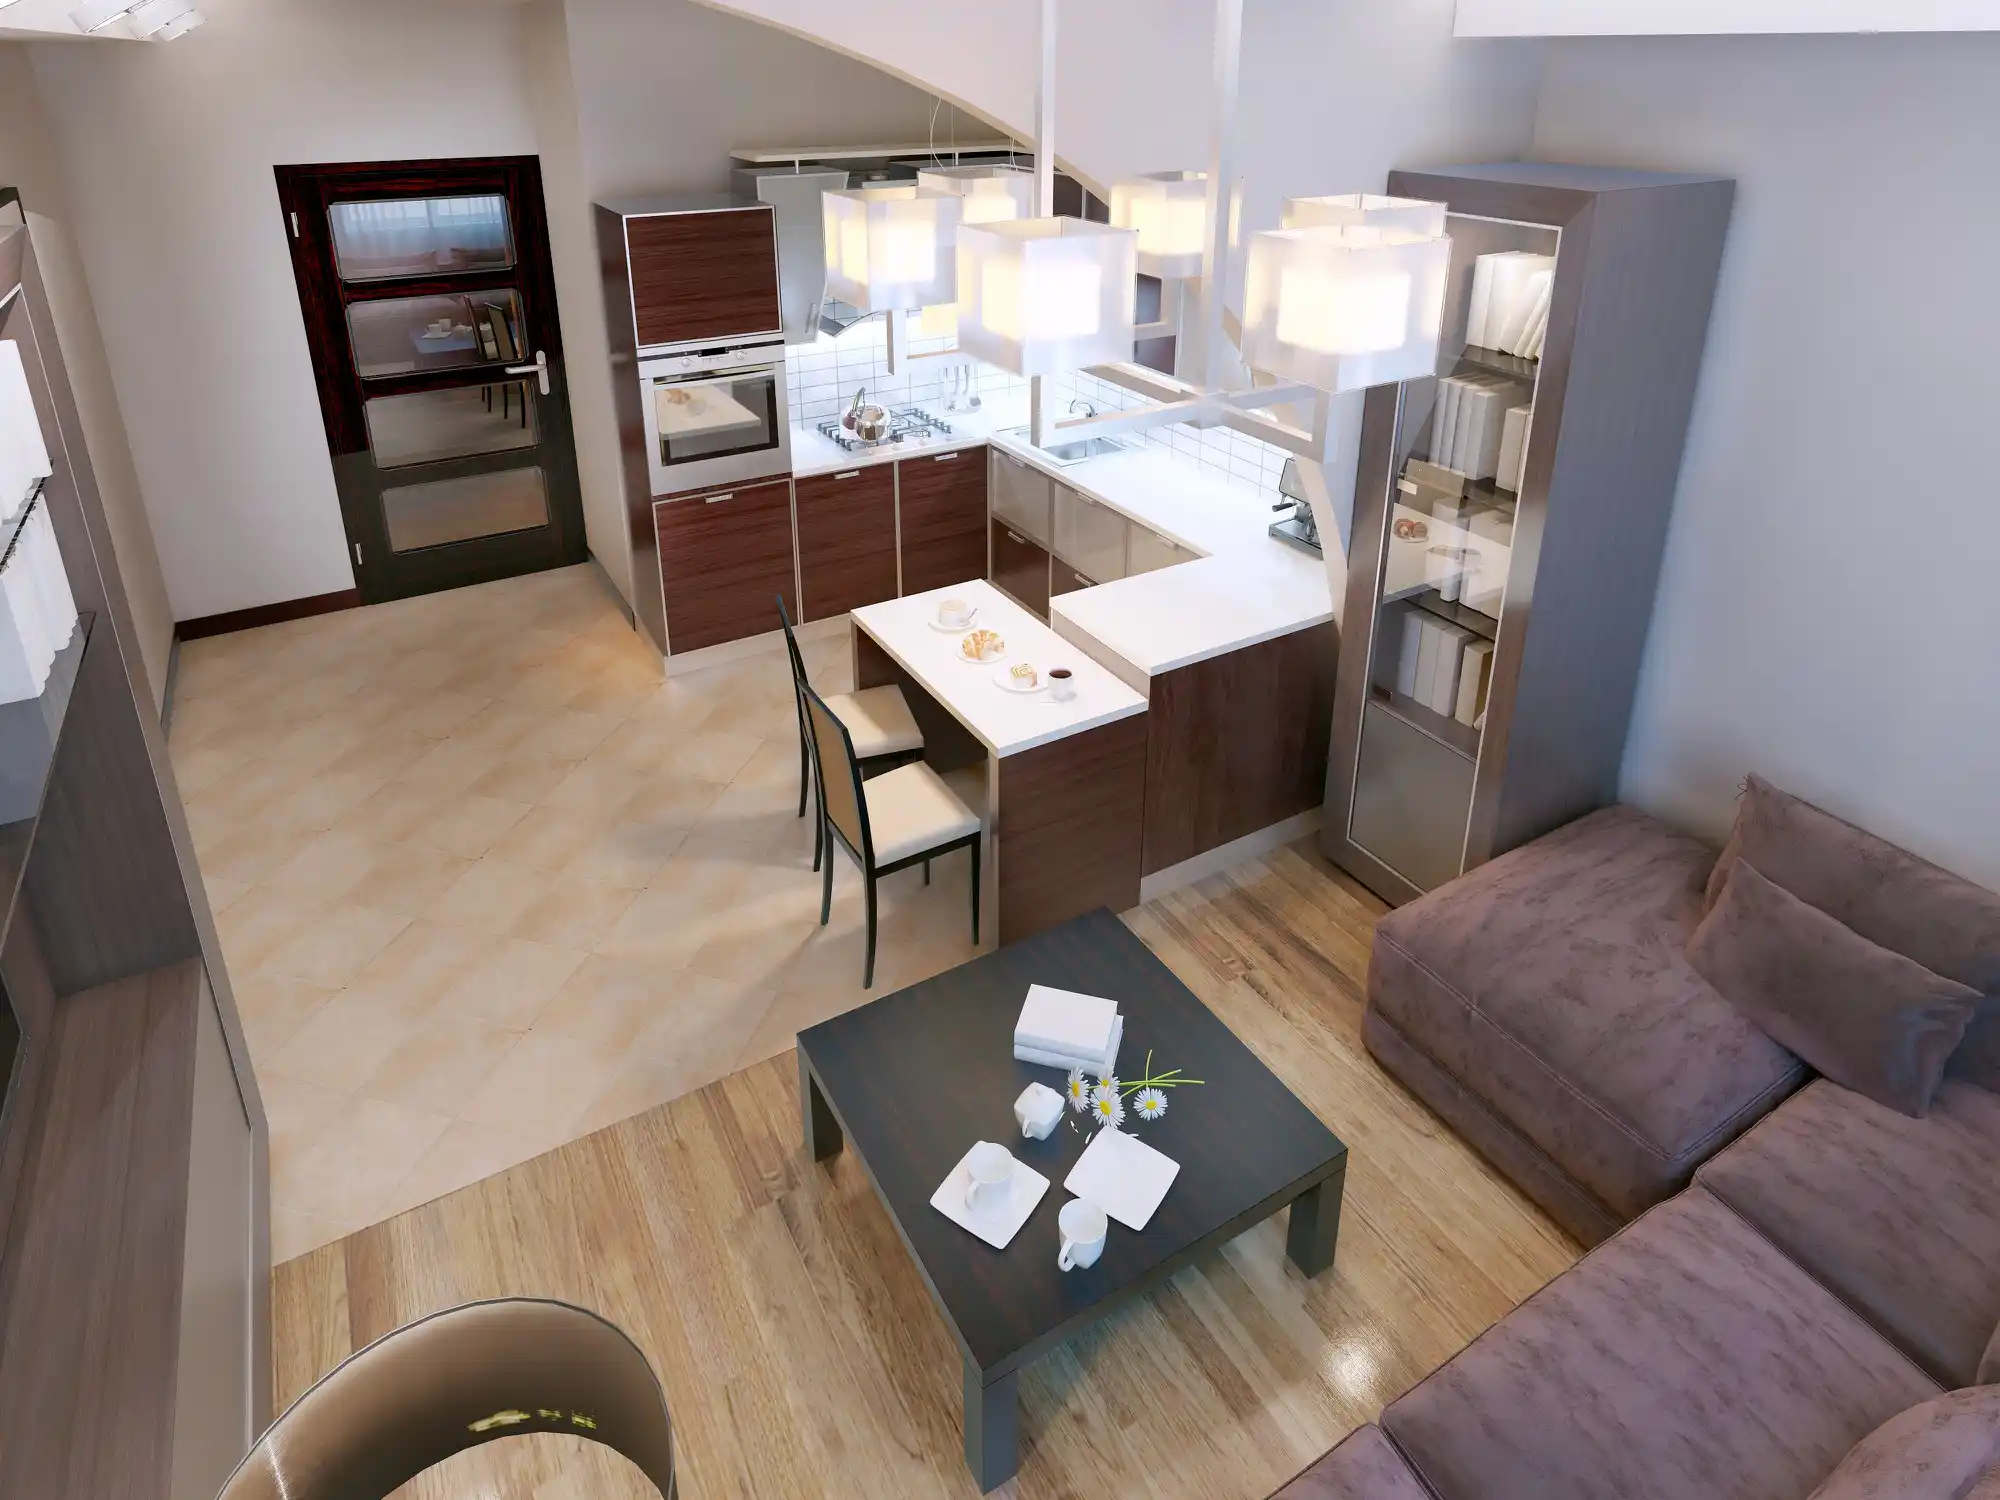 Apartamento mobiliado para alugar: imagem de cima de apartamento mobiliado, com cozinha e sala. Possui sofás, cadeiras, mesas, estante, geladeira, abajur e mais.